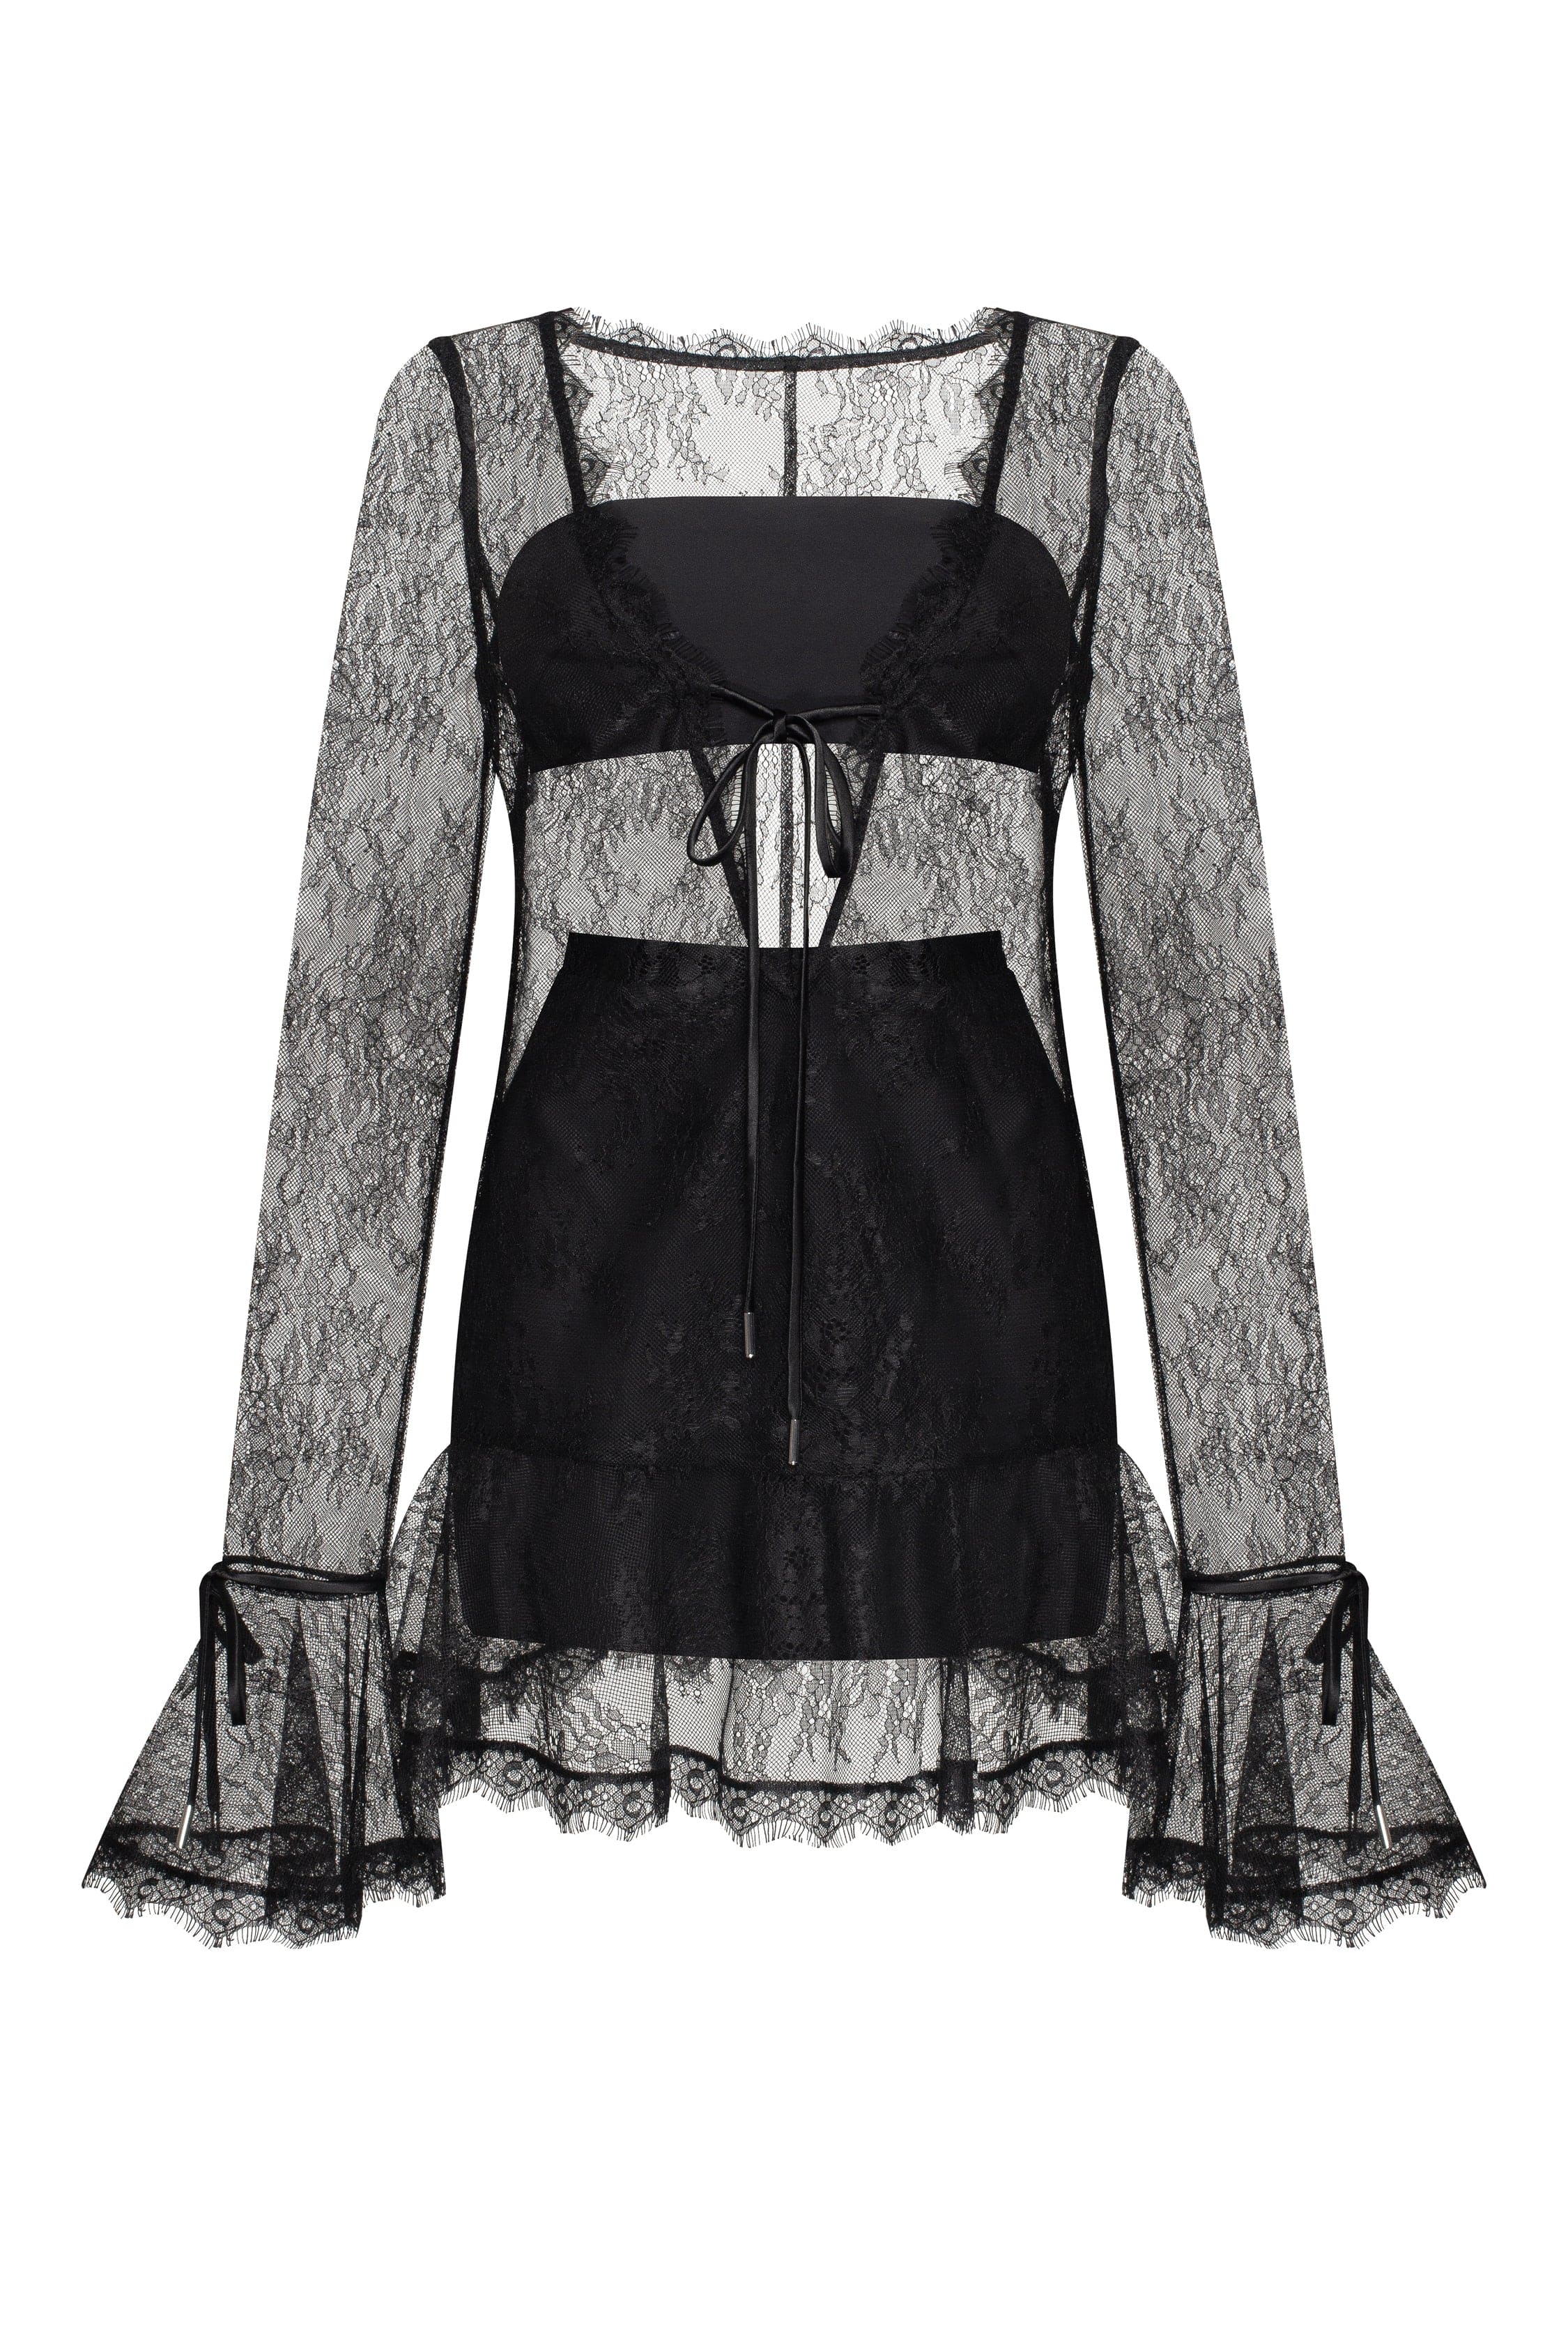 - black, Xo Worldwide Alluring delivery lace dress Dresses semi-transparent Milla in Xo mini USA, ➤➤